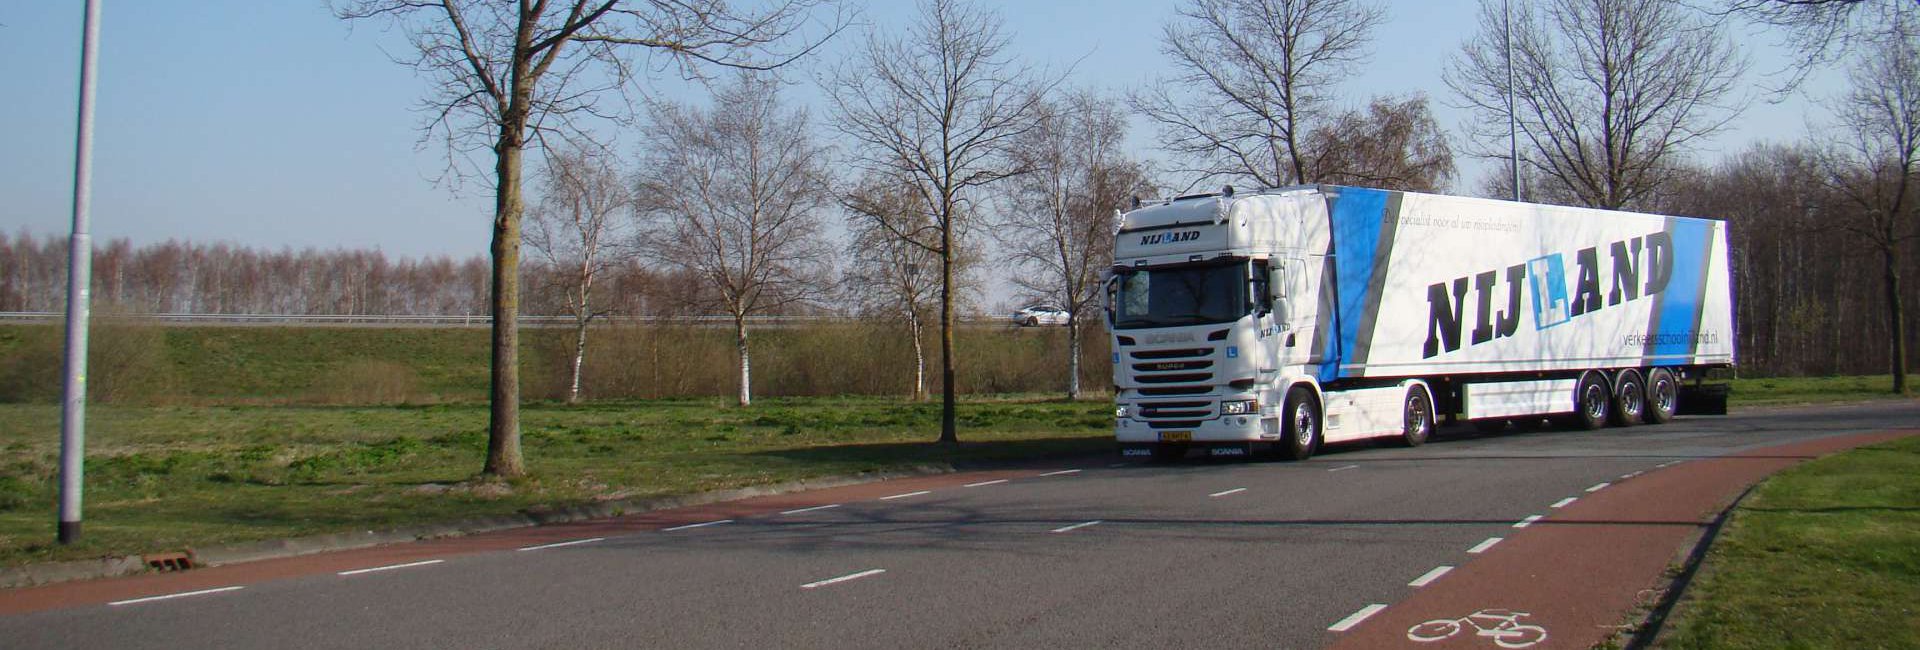 Nijland verkeersschool - rijles voor de gemeente Emmen - Scania met oplegger